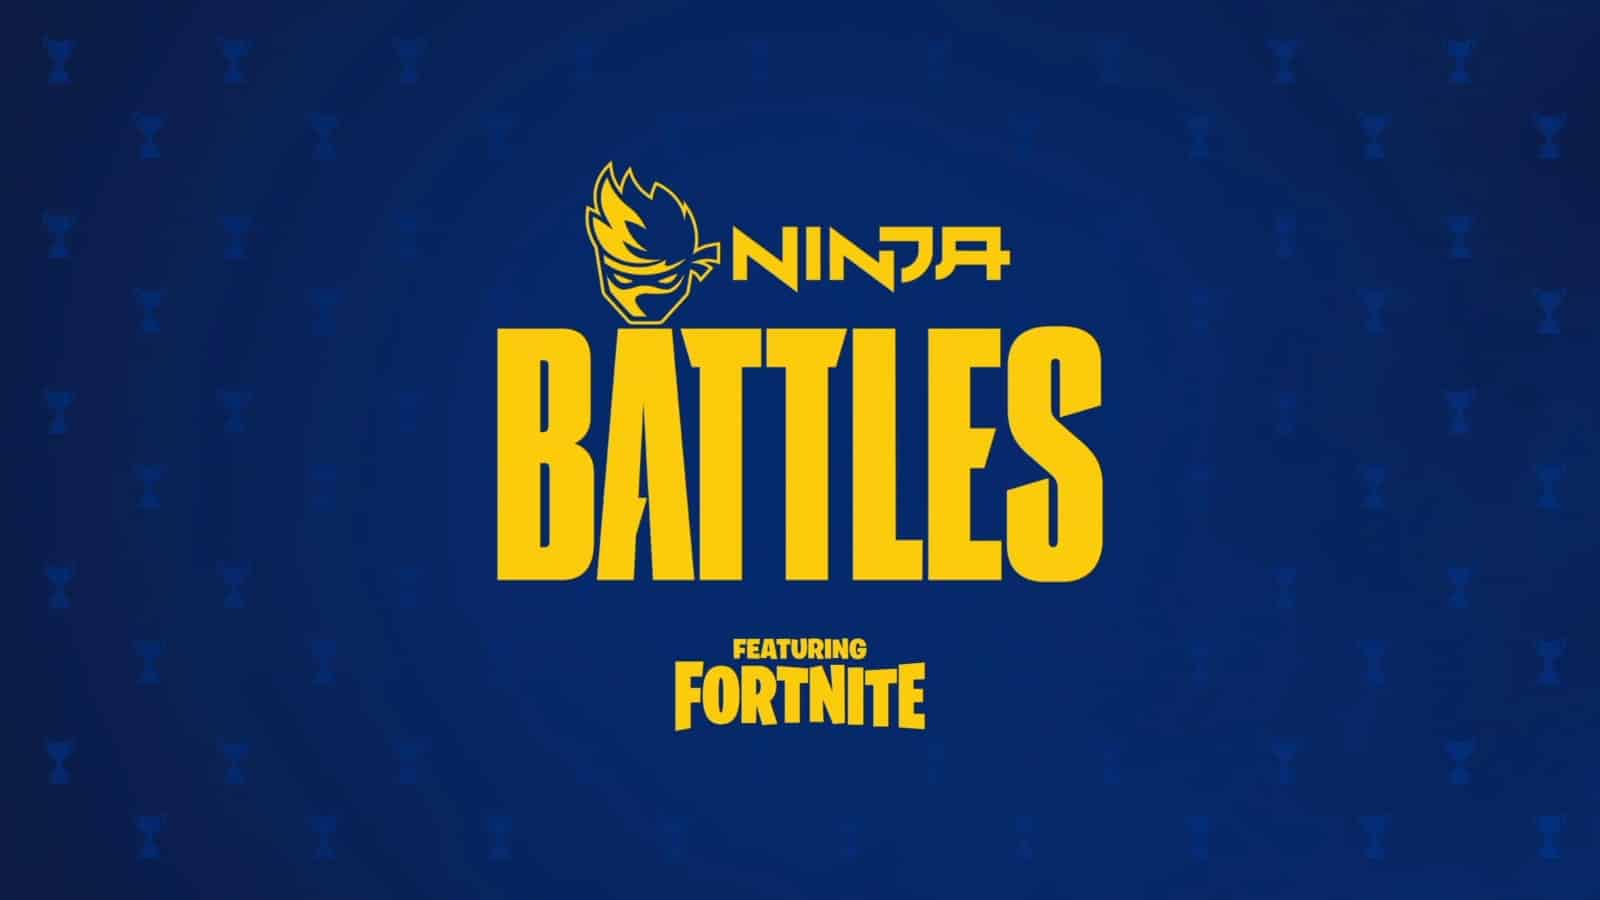 Fortnite Ninja Battles